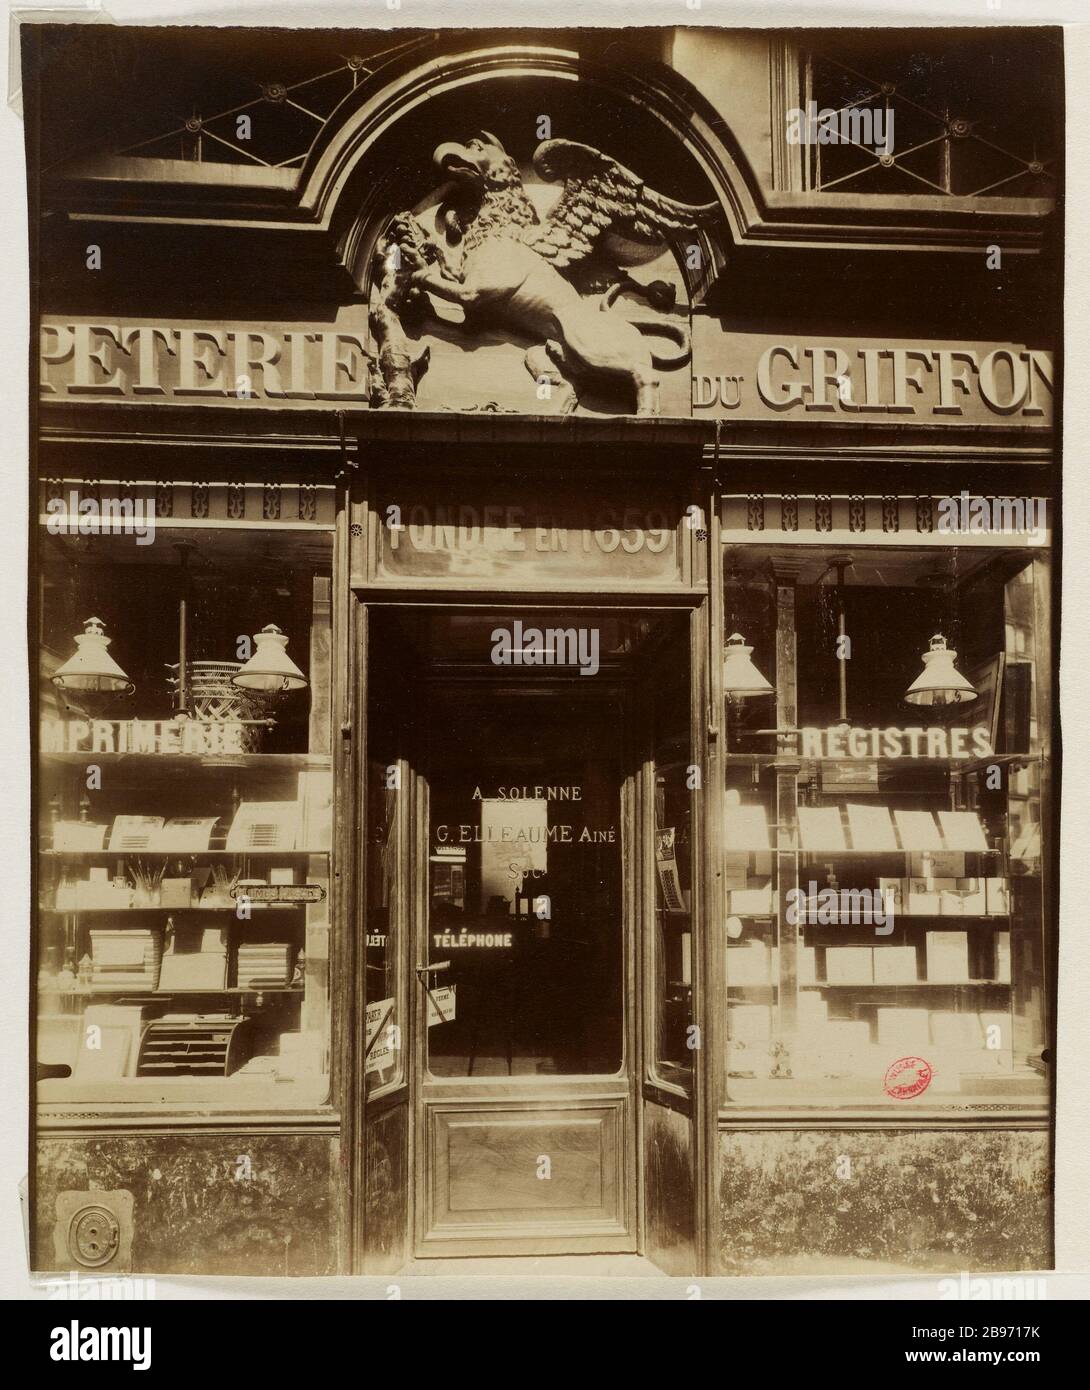 DIE GOLDEN GRIFFON 'PRESS' 10 BUCI STRASSE, 6. BEZIRK, PARIS 'Au griffon  d'Or' Papeterie', 10 rue de Buci, Paris (VIème arr.), 1911. Photographie  d'Eugène Atget (1857-1927). Paris, musée Carnavalet Stockfotografie - Alamy